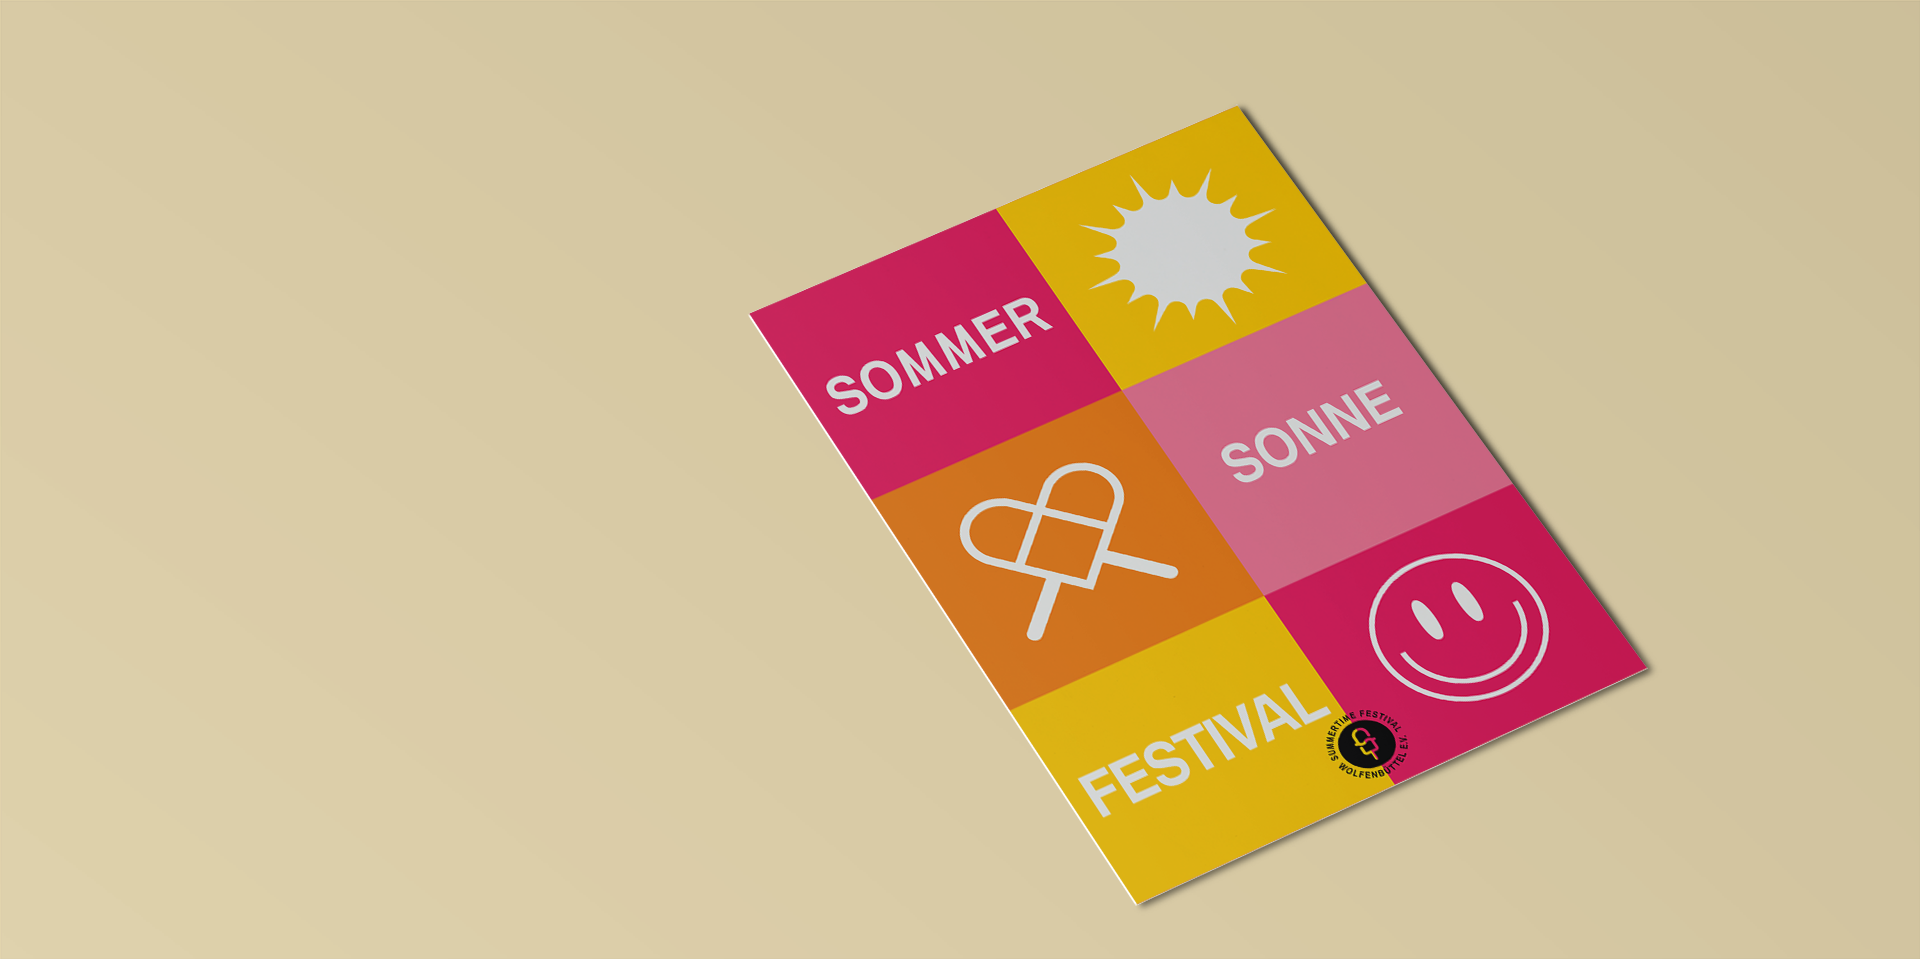 summertime festival merchandise design print postcard